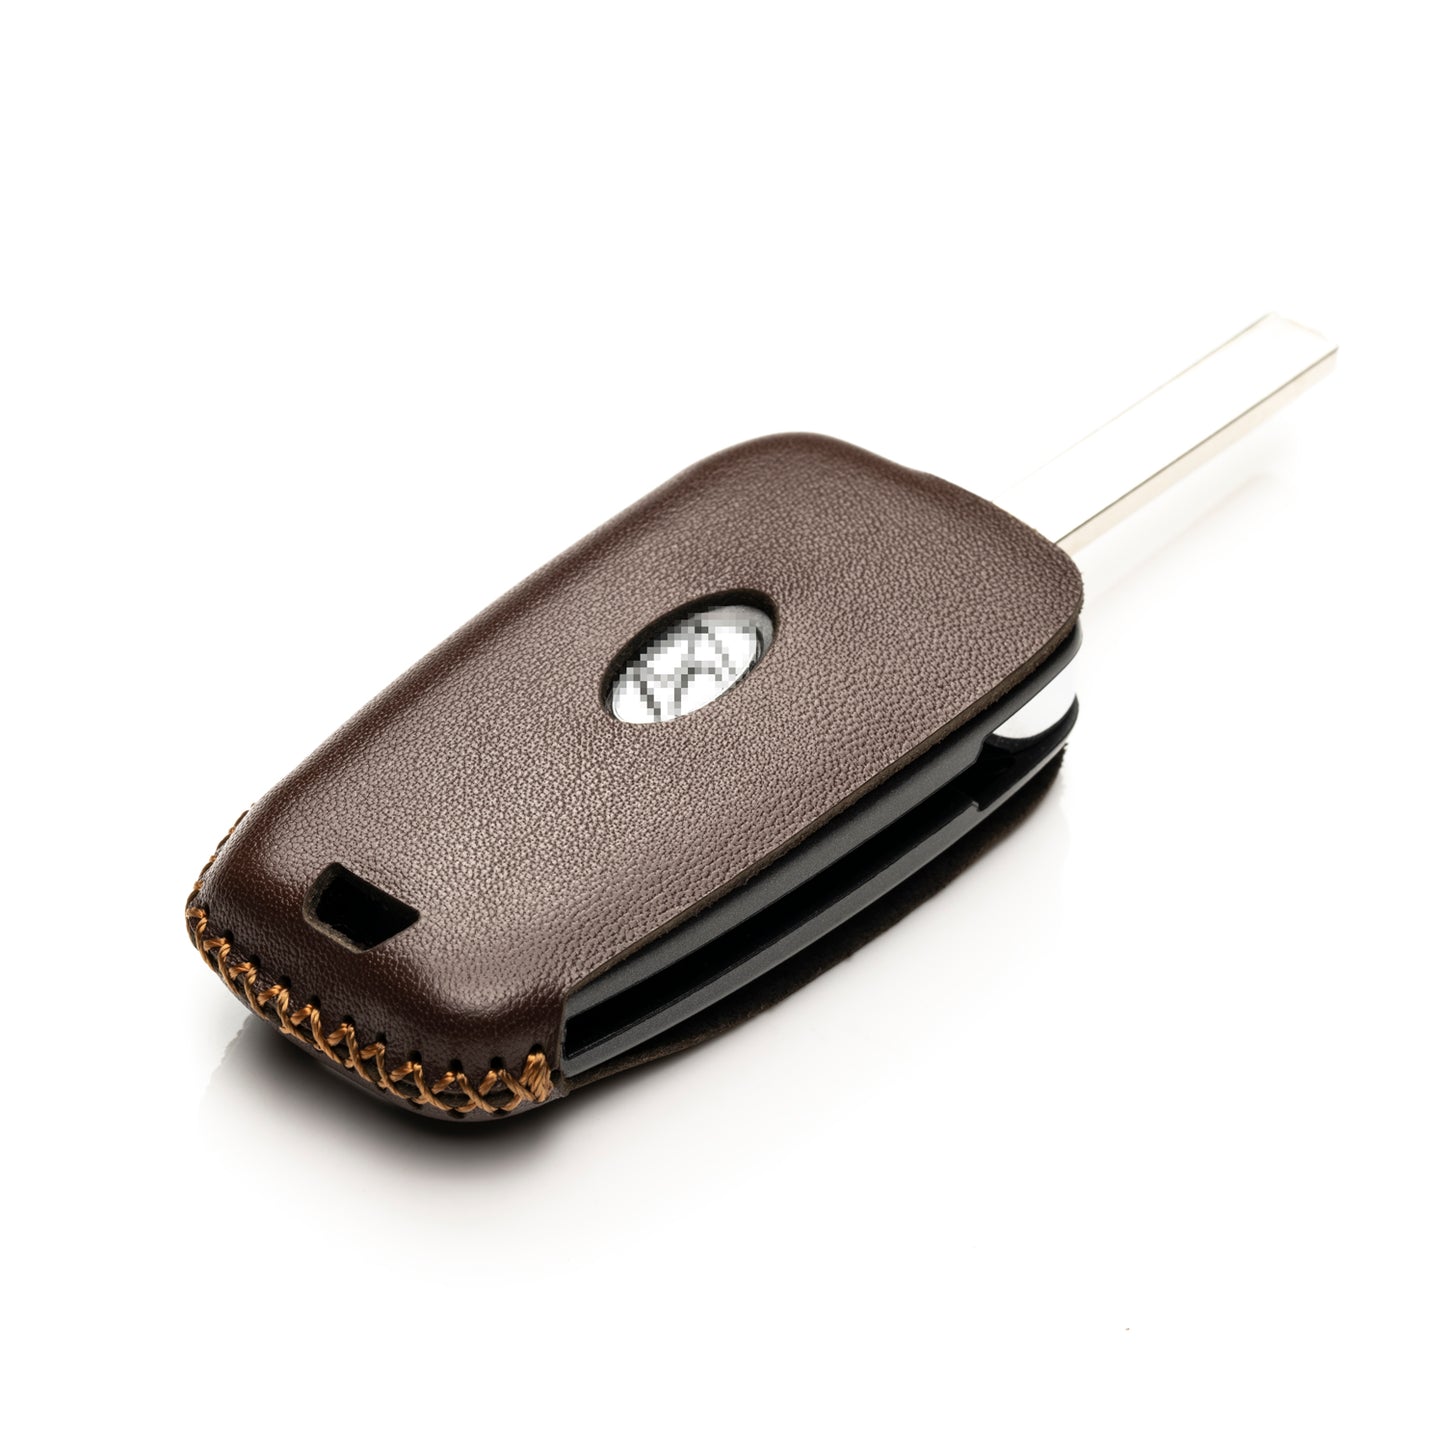 Vitodeco 4-Button Genuine Leather Flip Key Fob Case Cover Compatible with Hyundai Accent, Kona, Santa Fe, Tucson, Venue, Sonata, Veloster 2018-2022